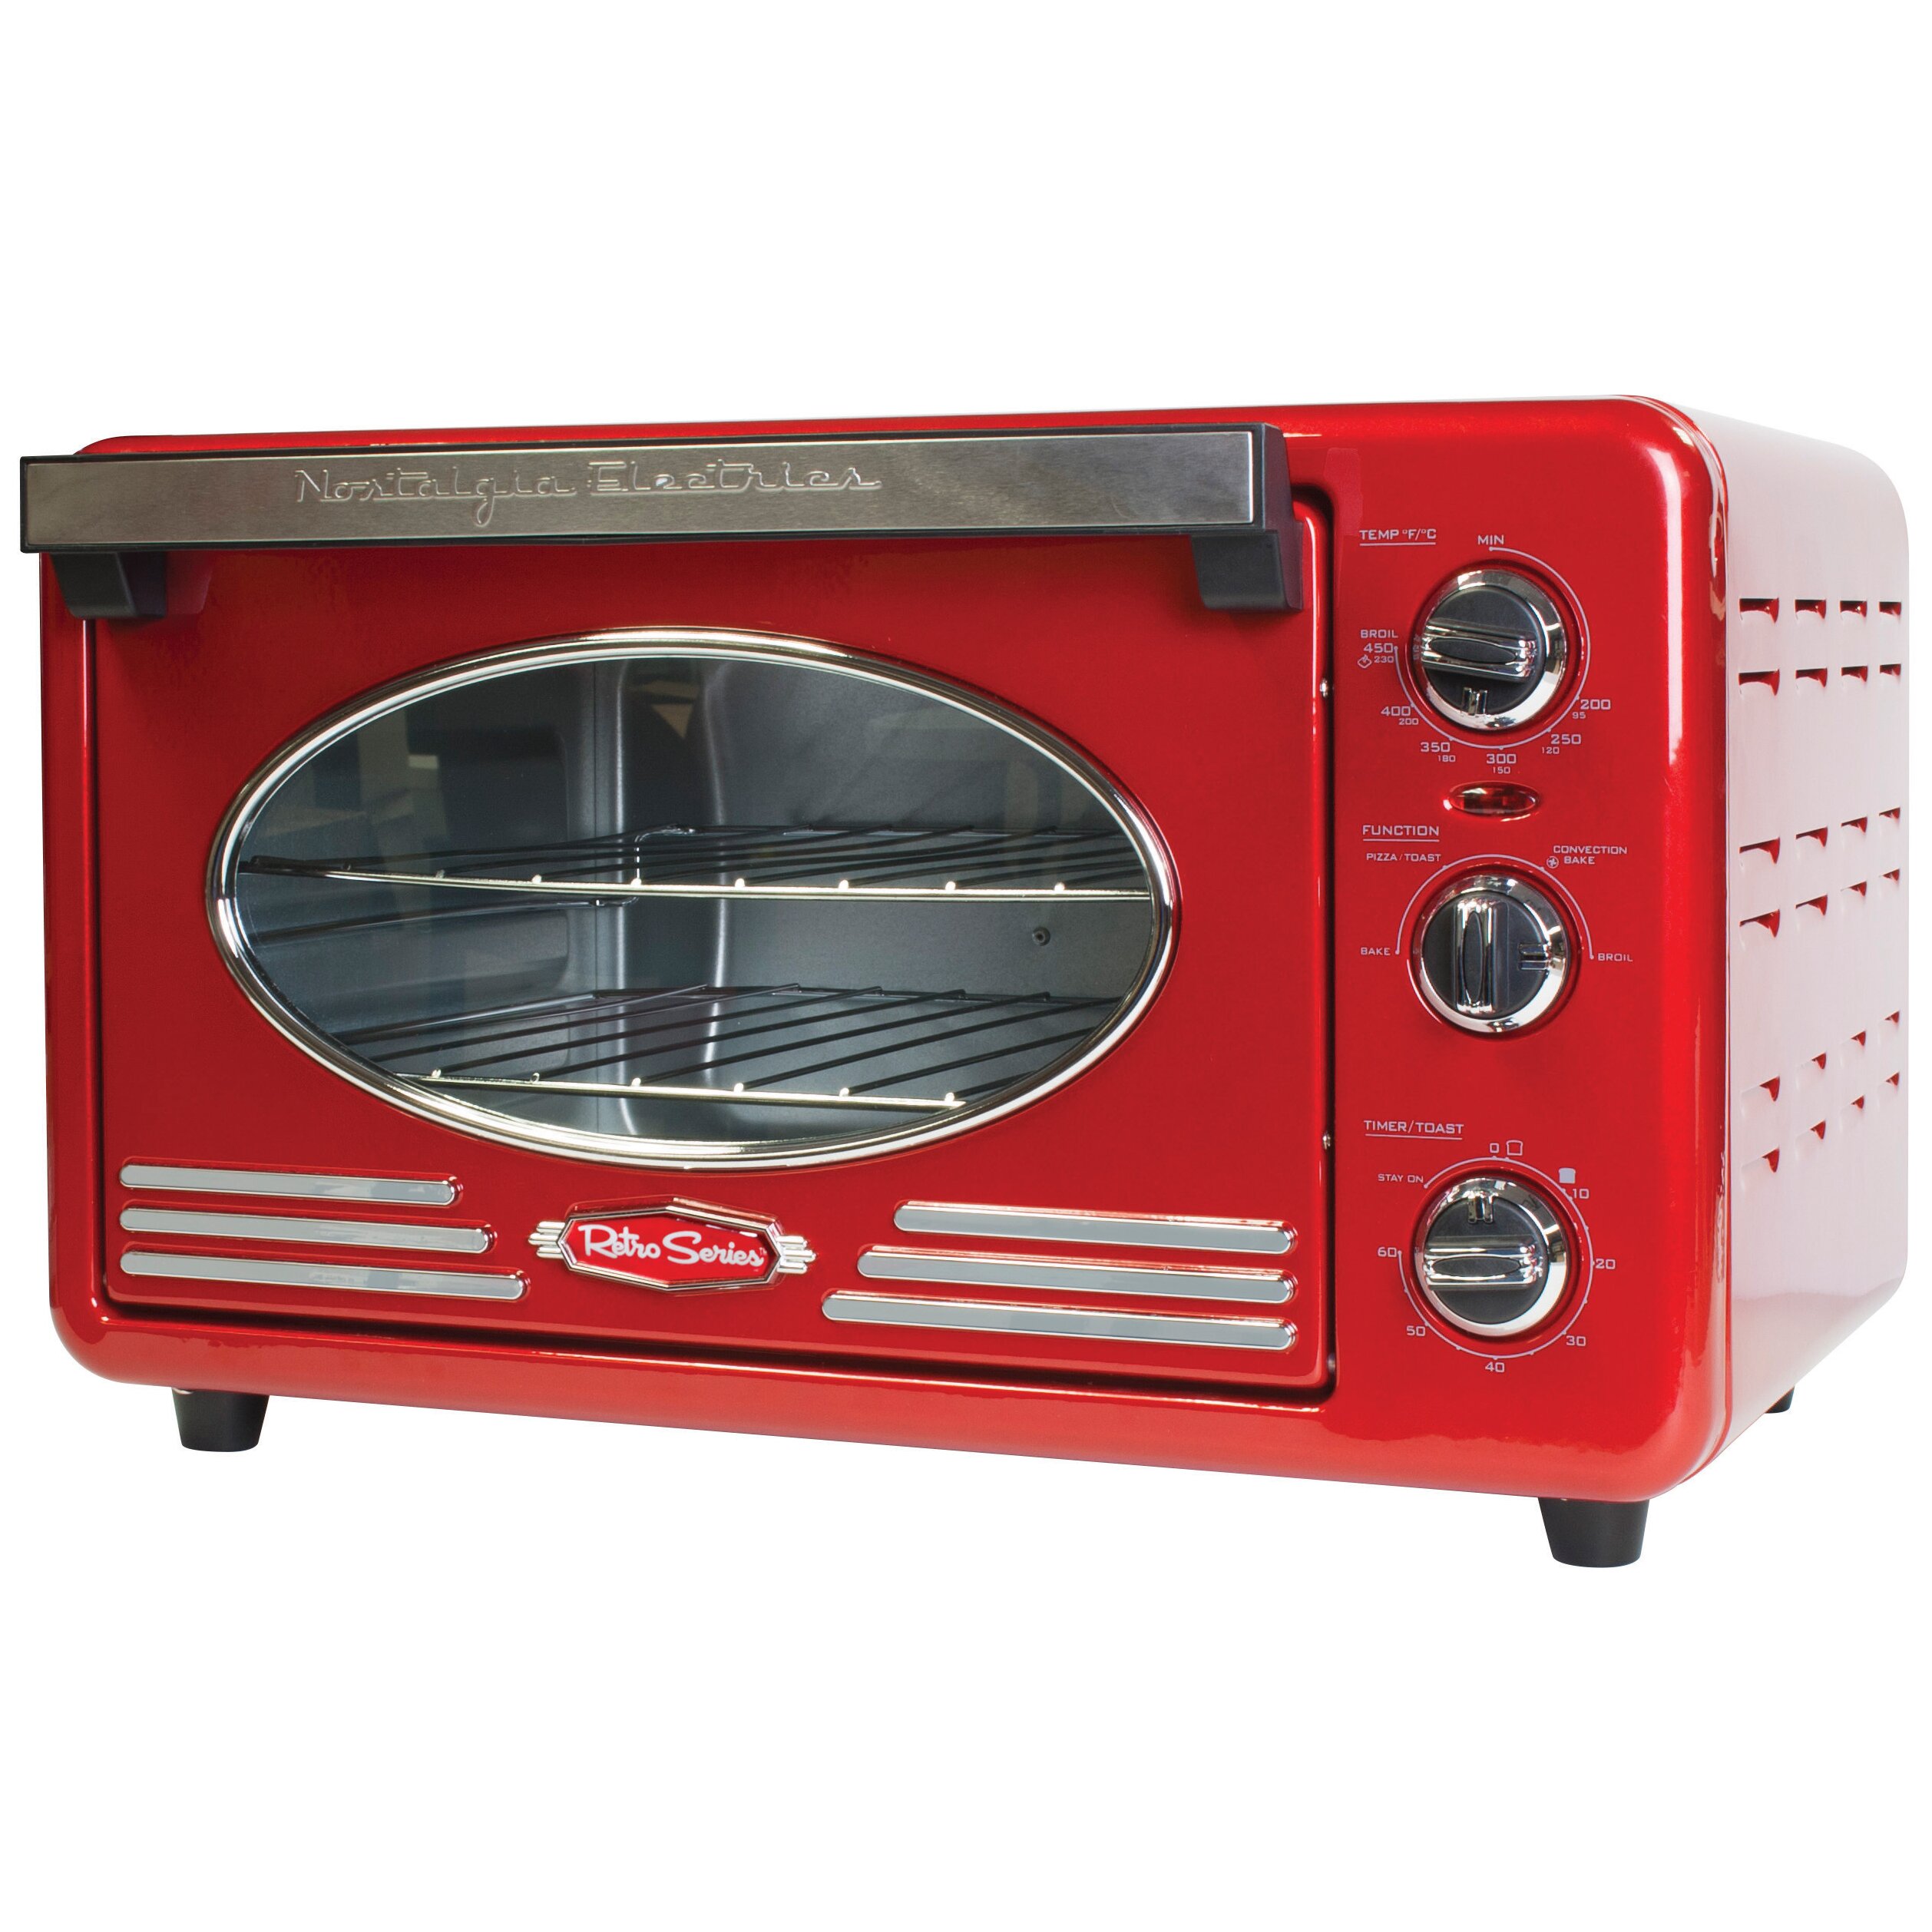 nostalgia oven toaster